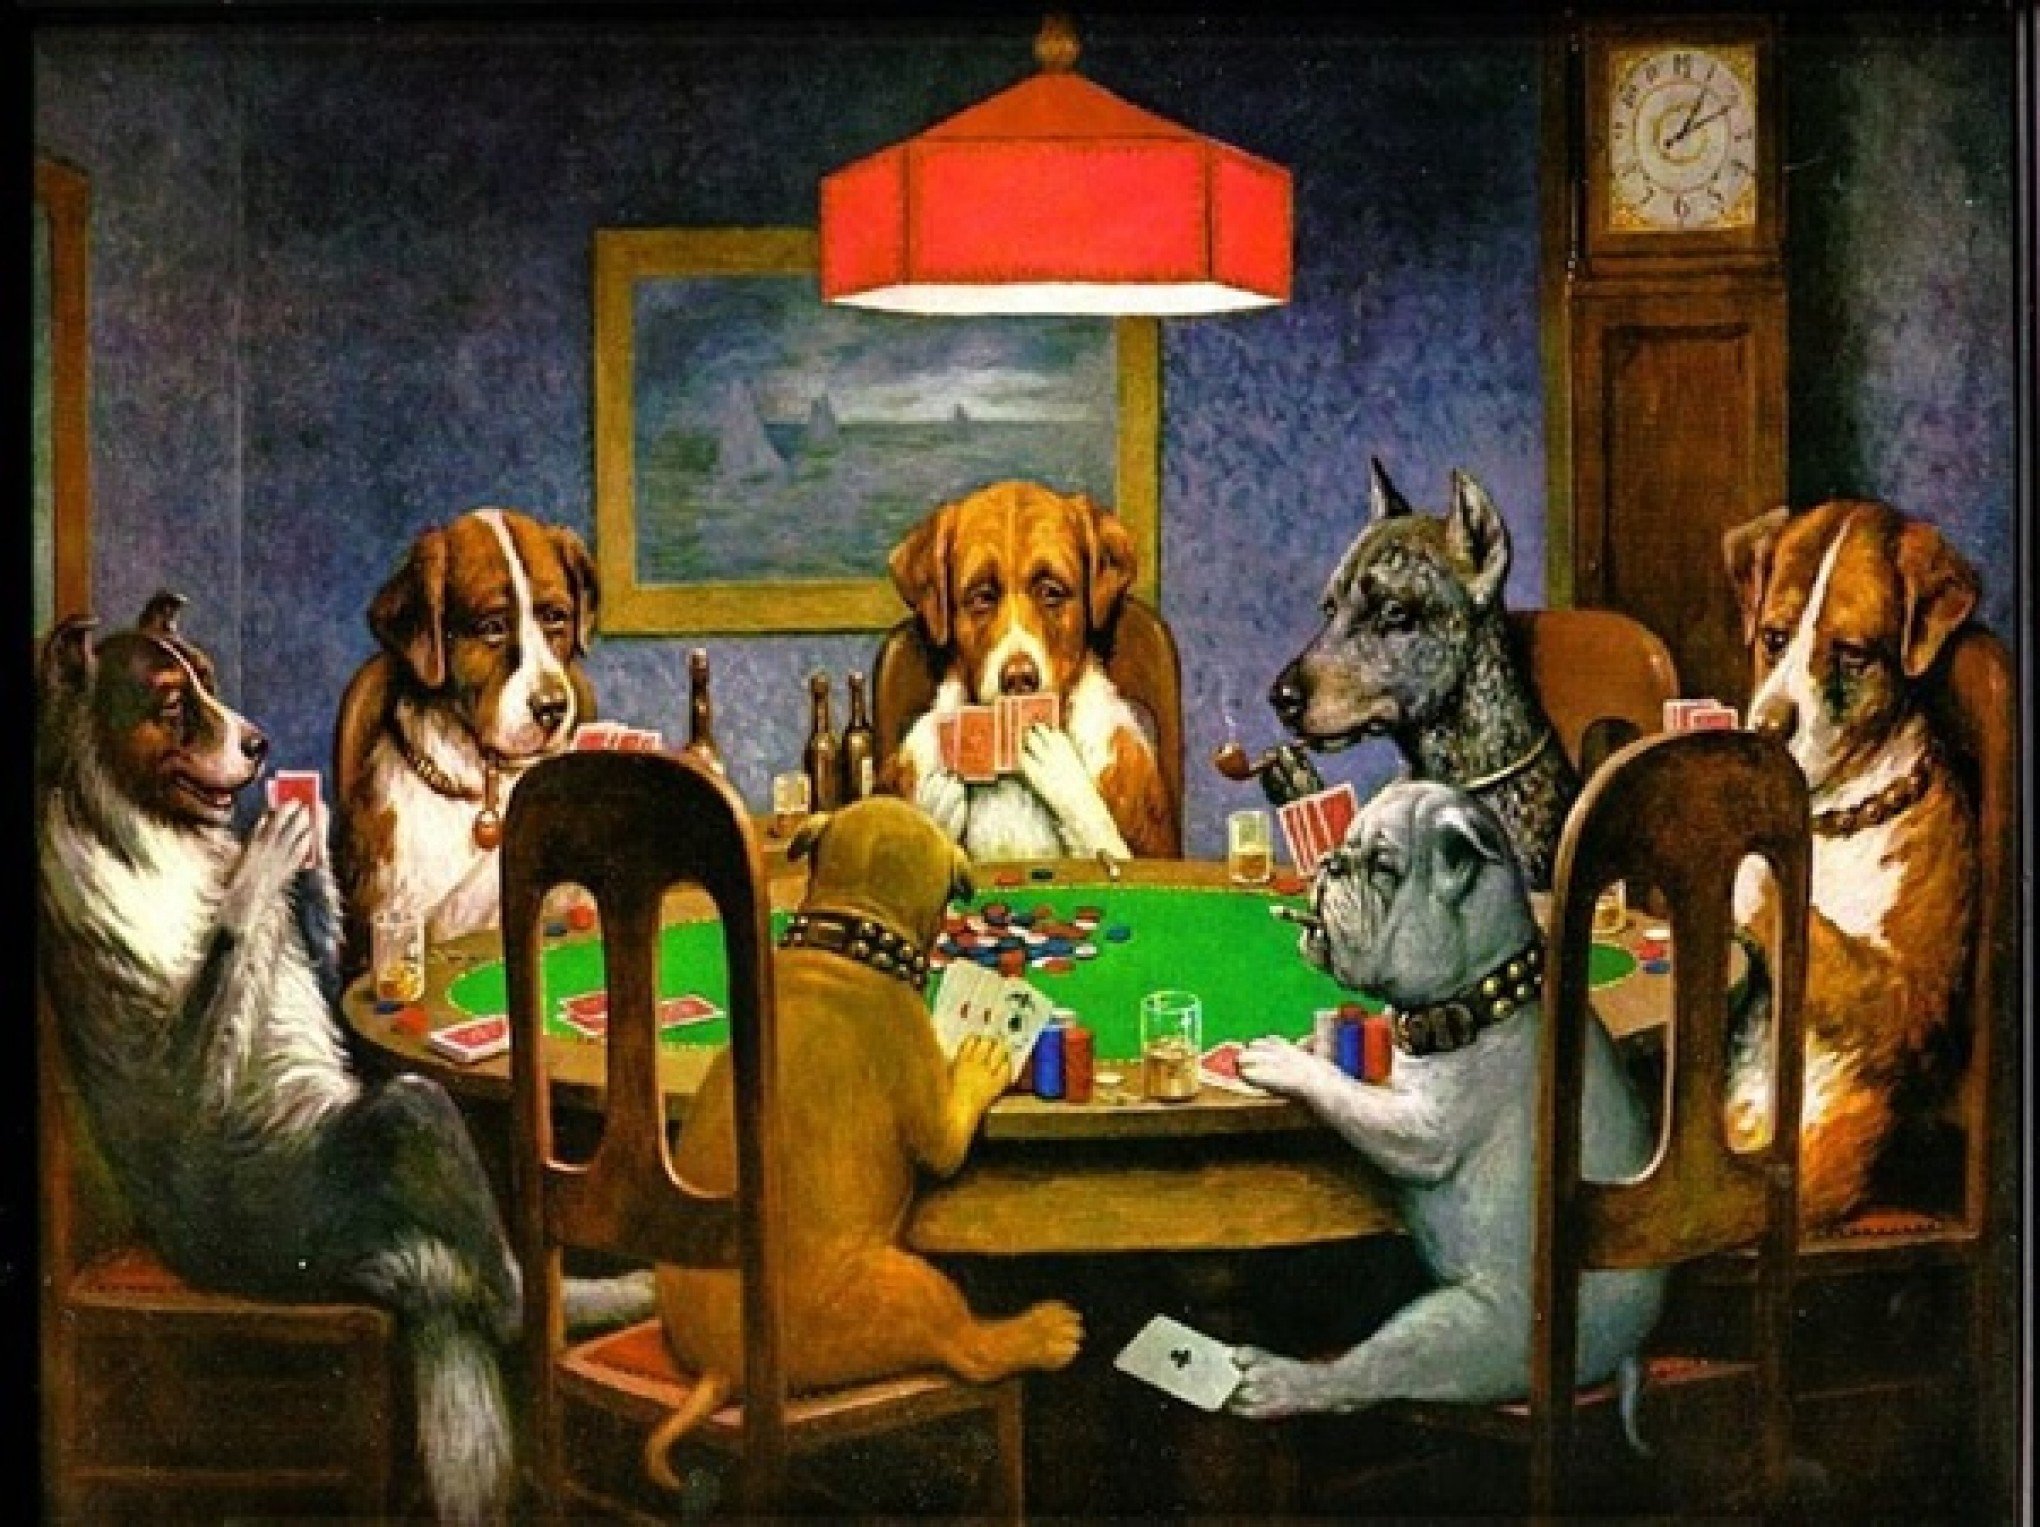 Poker: origem e evolução histórica